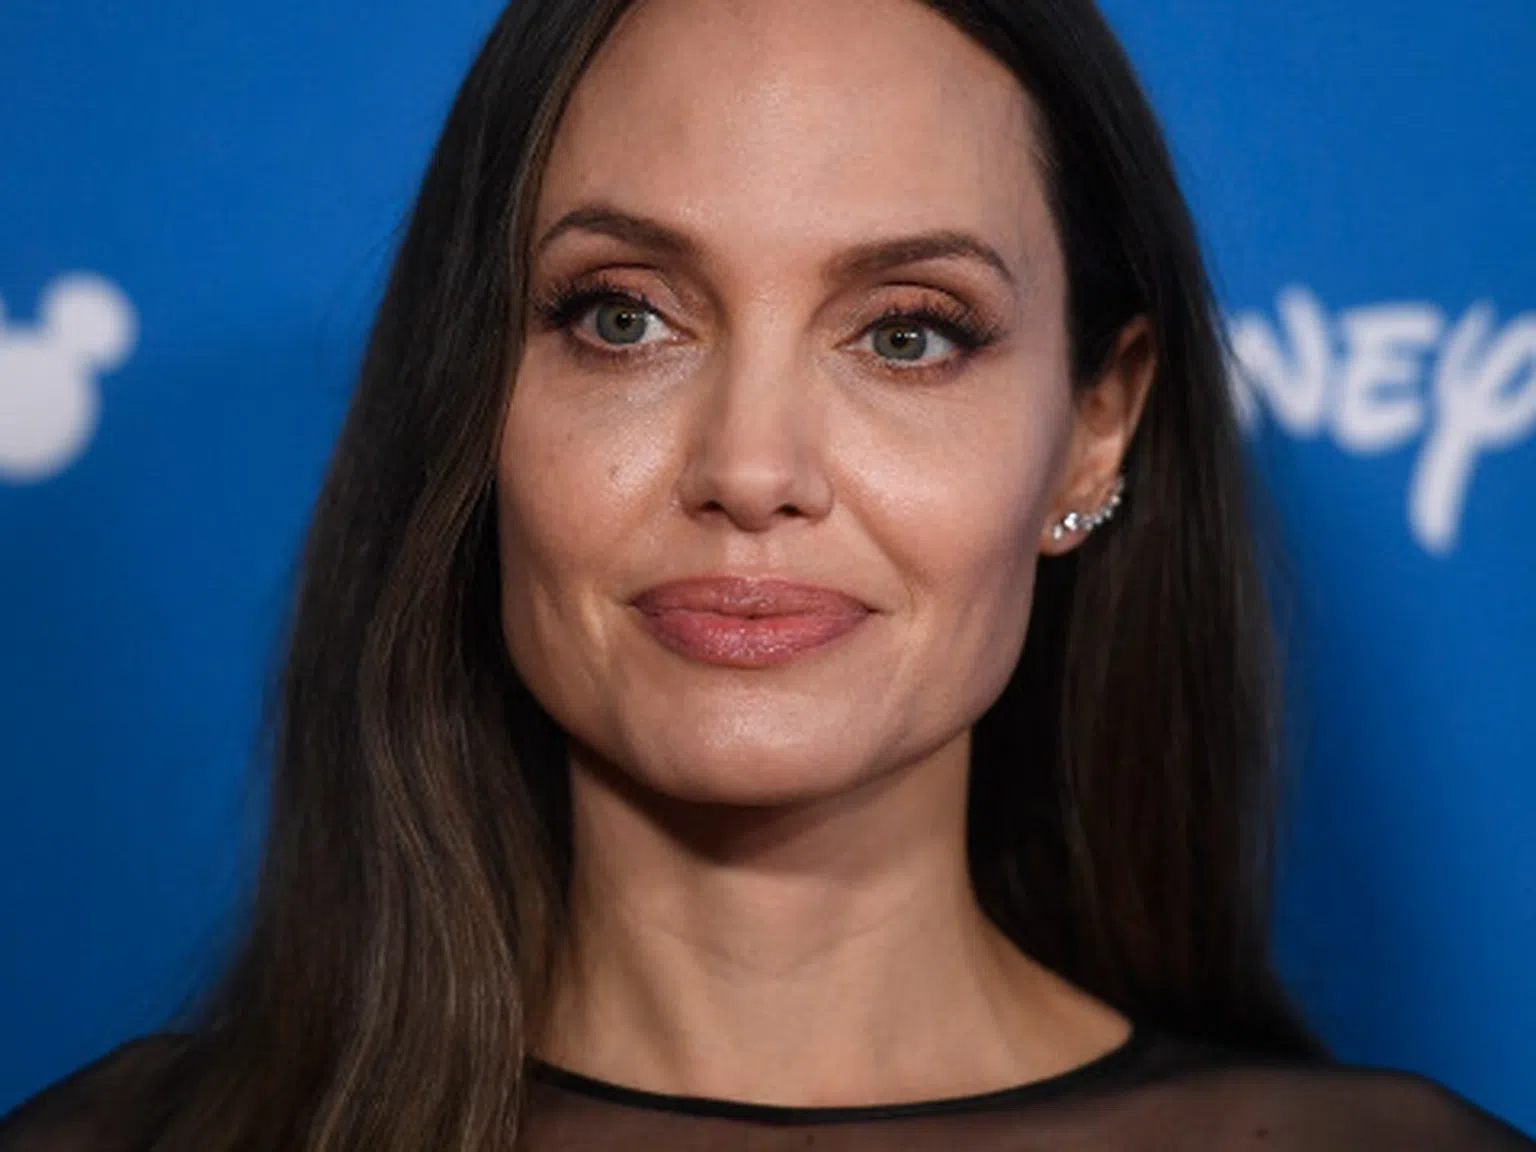 Анджелина Джоли гледа децата, докато Брад Пит обикаля по барове с новата си красавица